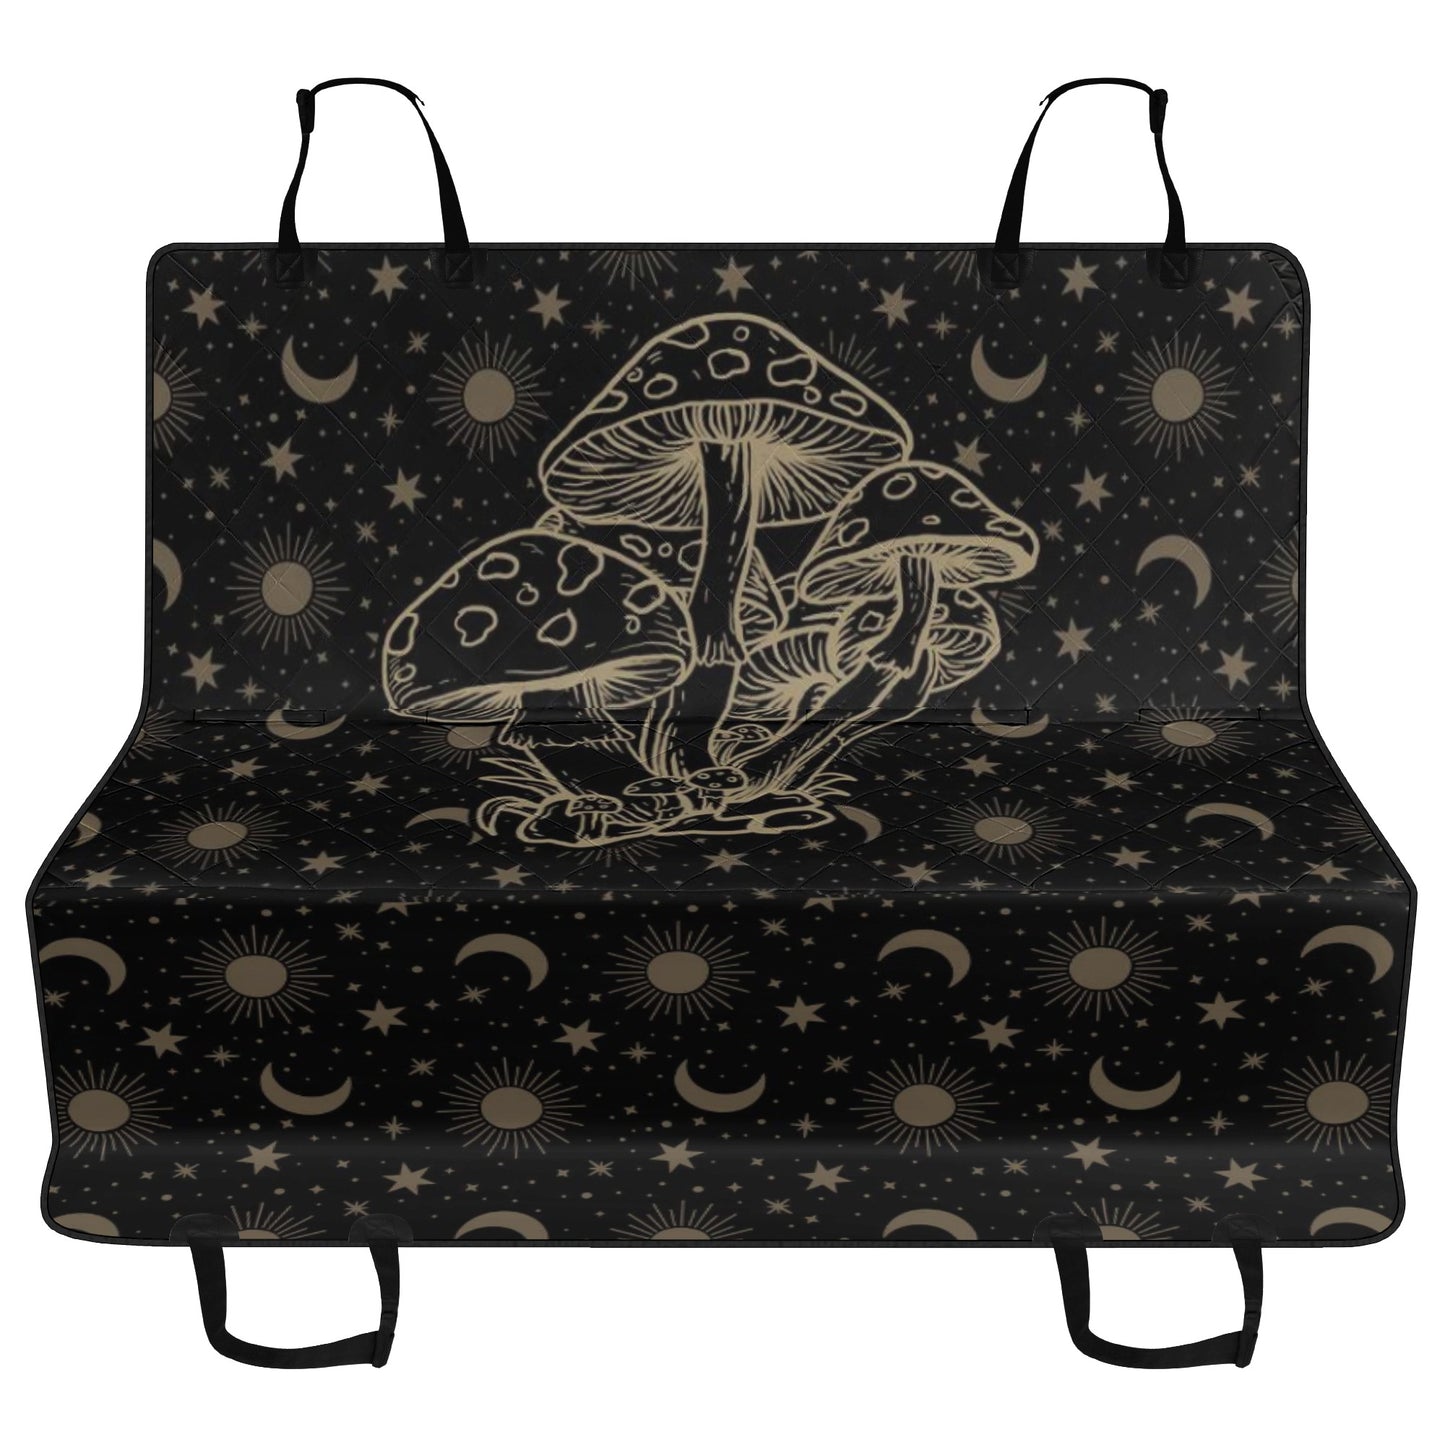 Celestial Mushroom Car Pet Seat Covers